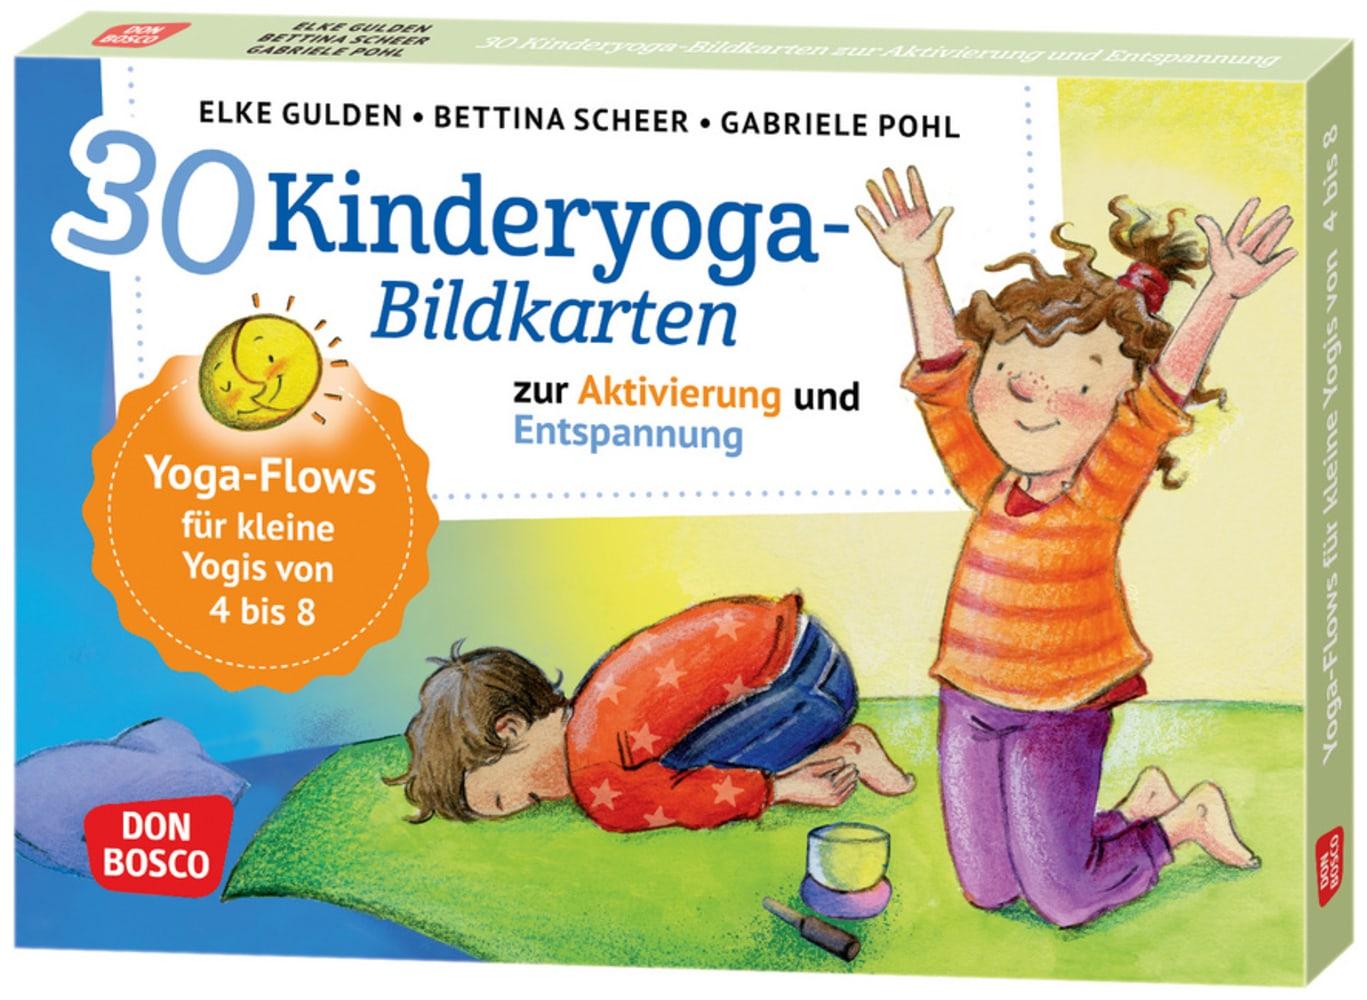 Joc / Jucărie 30 Kinderyoga-Bildkarten zur Aktivierung und Entspannung Elke Gulden